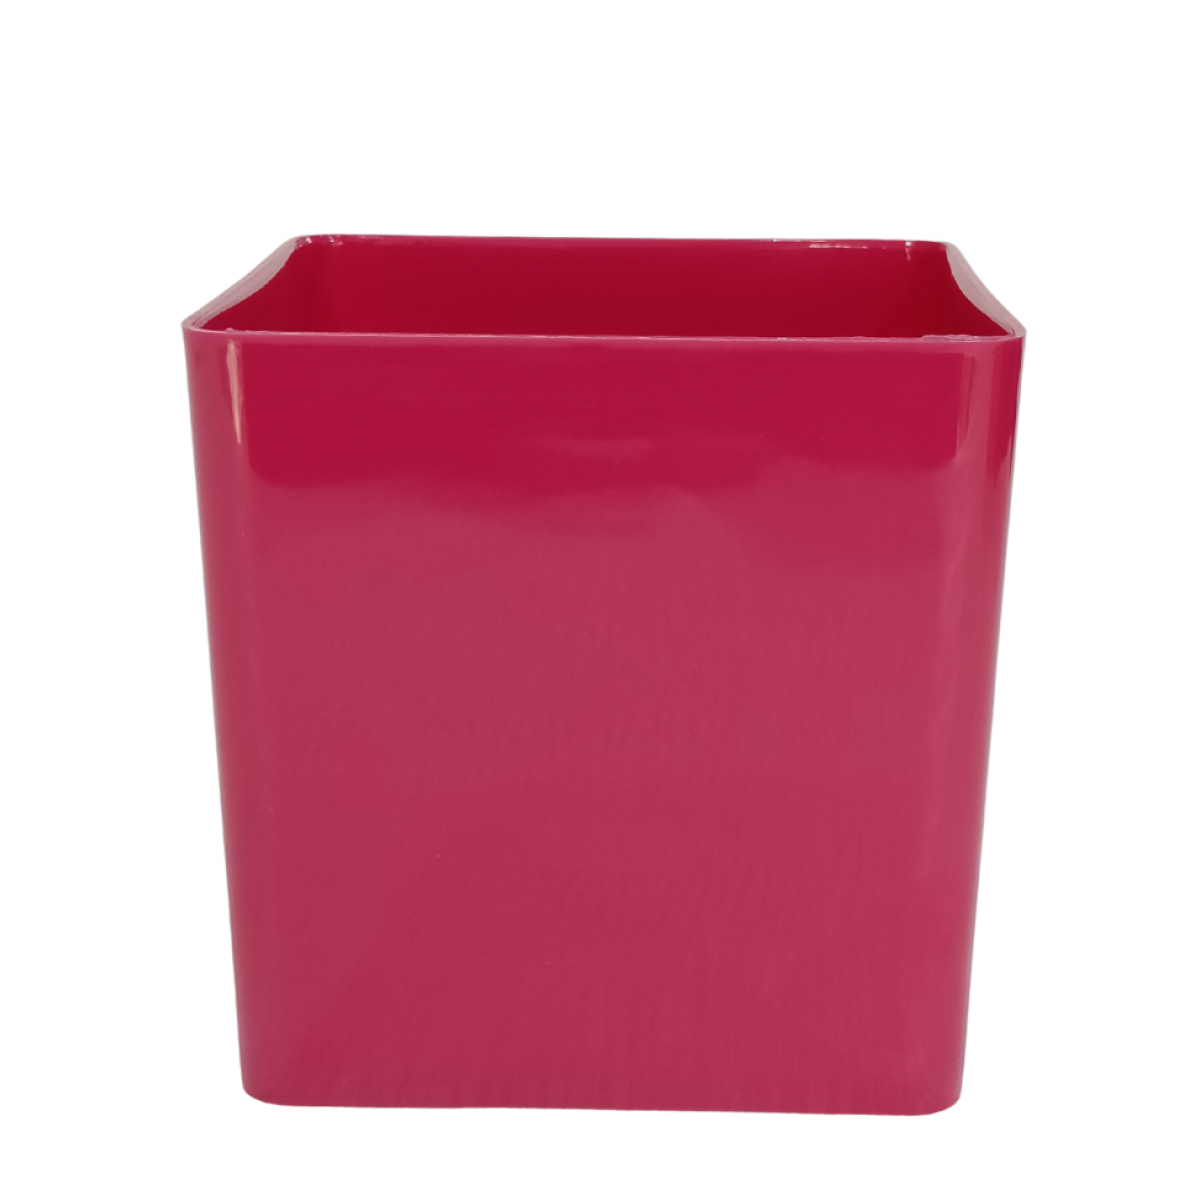 5154 Cube Magenta 13x13x13cm Acrylic Vase - 1 No